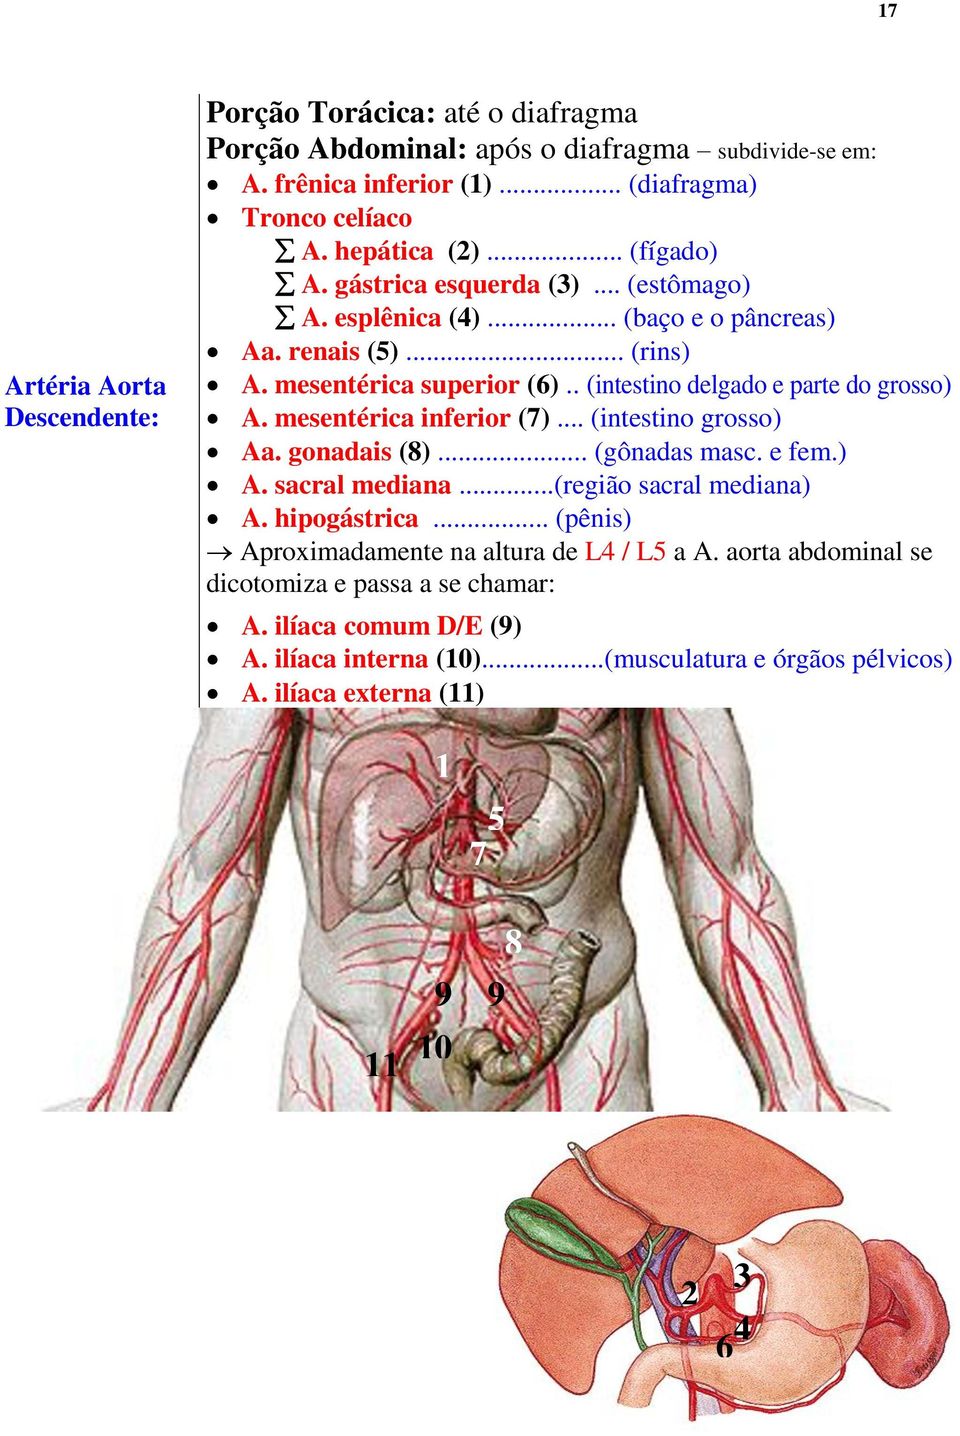 mesentérica inferior (7)... (intestino grosso) Aa. gonadais (8)... (gônadas masc. e fem.) A. sacral mediana...(região sacral mediana) A. hipogástrica.